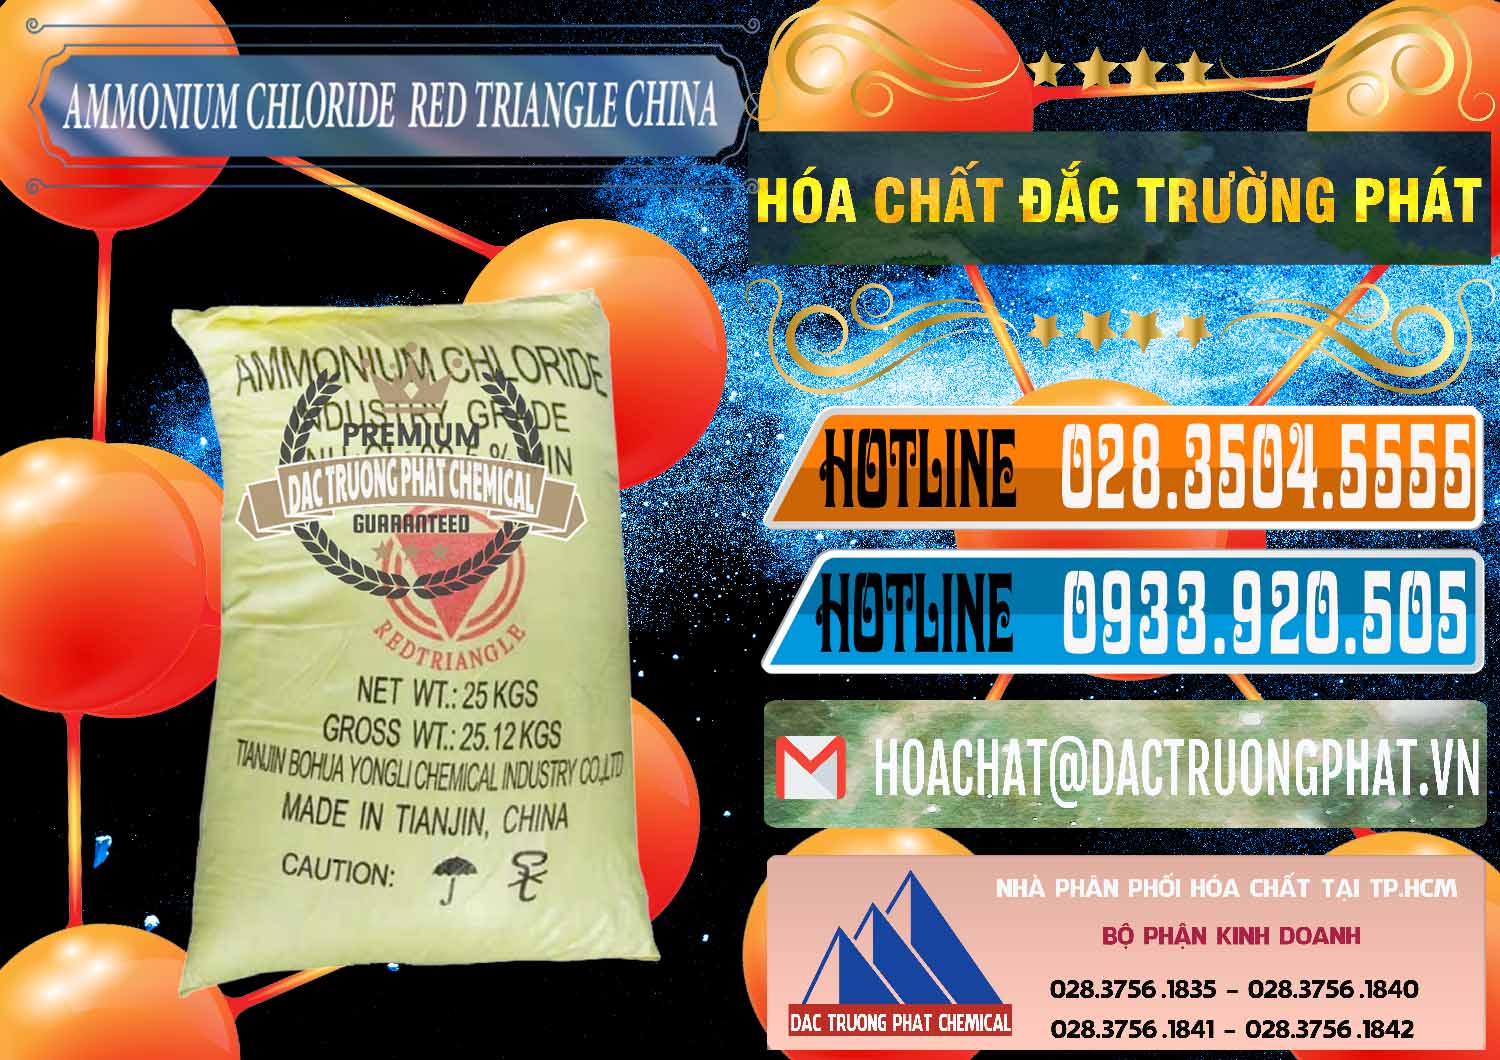 Cty bán và phân phối Ammonium Chloride - Muối Lạnh NH4CL Red Triangle Trung Quốc China - 0377 - Công ty chuyên bán & phân phối hóa chất tại TP.HCM - stmp.net